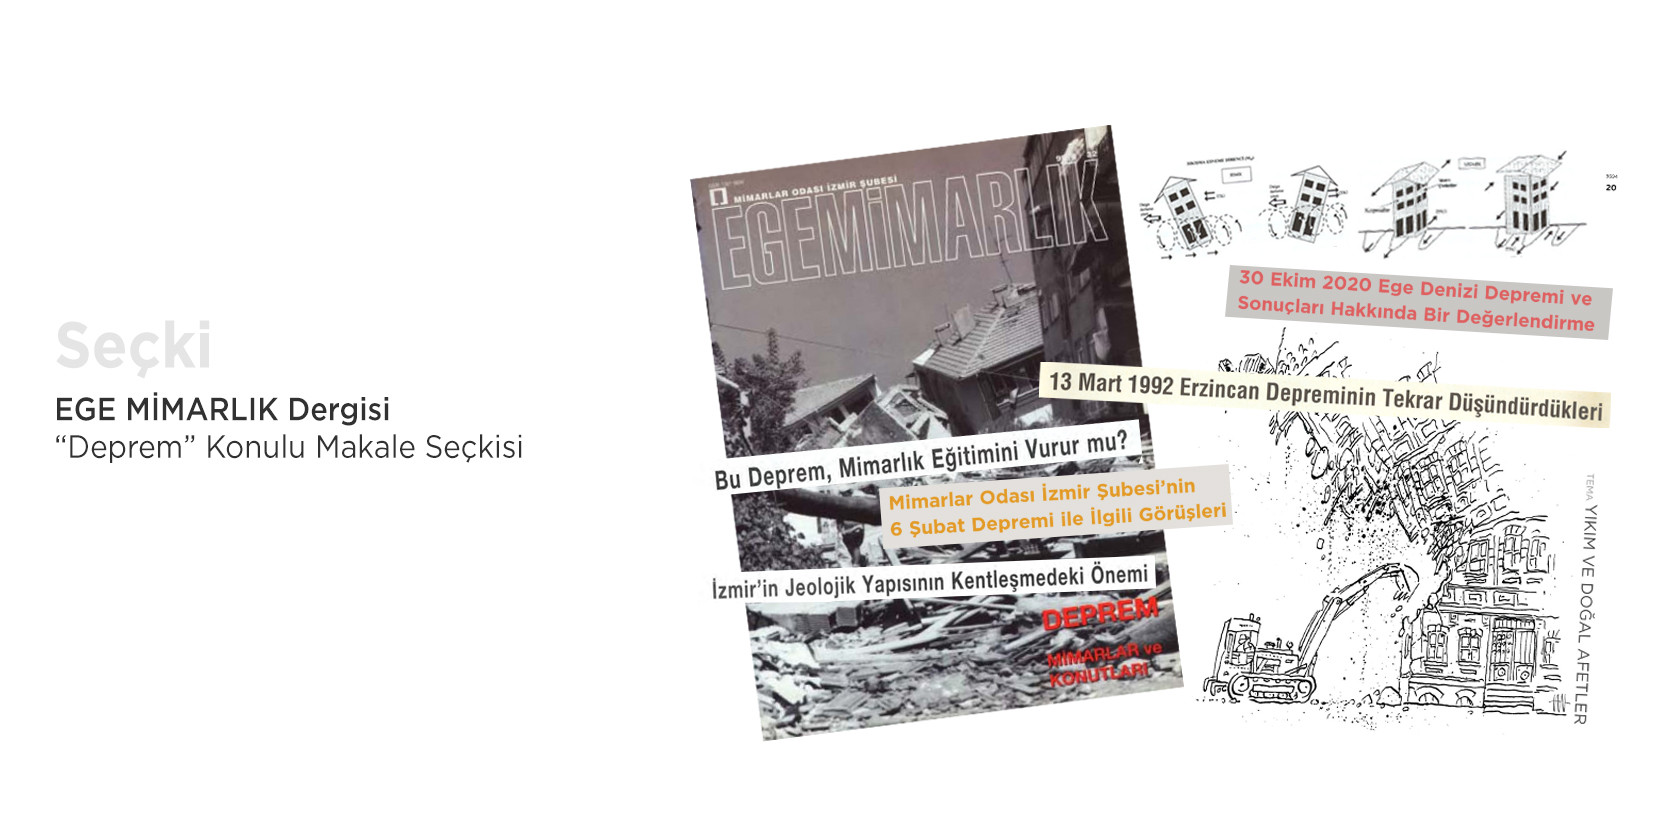 Ege Mimarlık dergisinin arşivinden "deprem" konulu yazılar